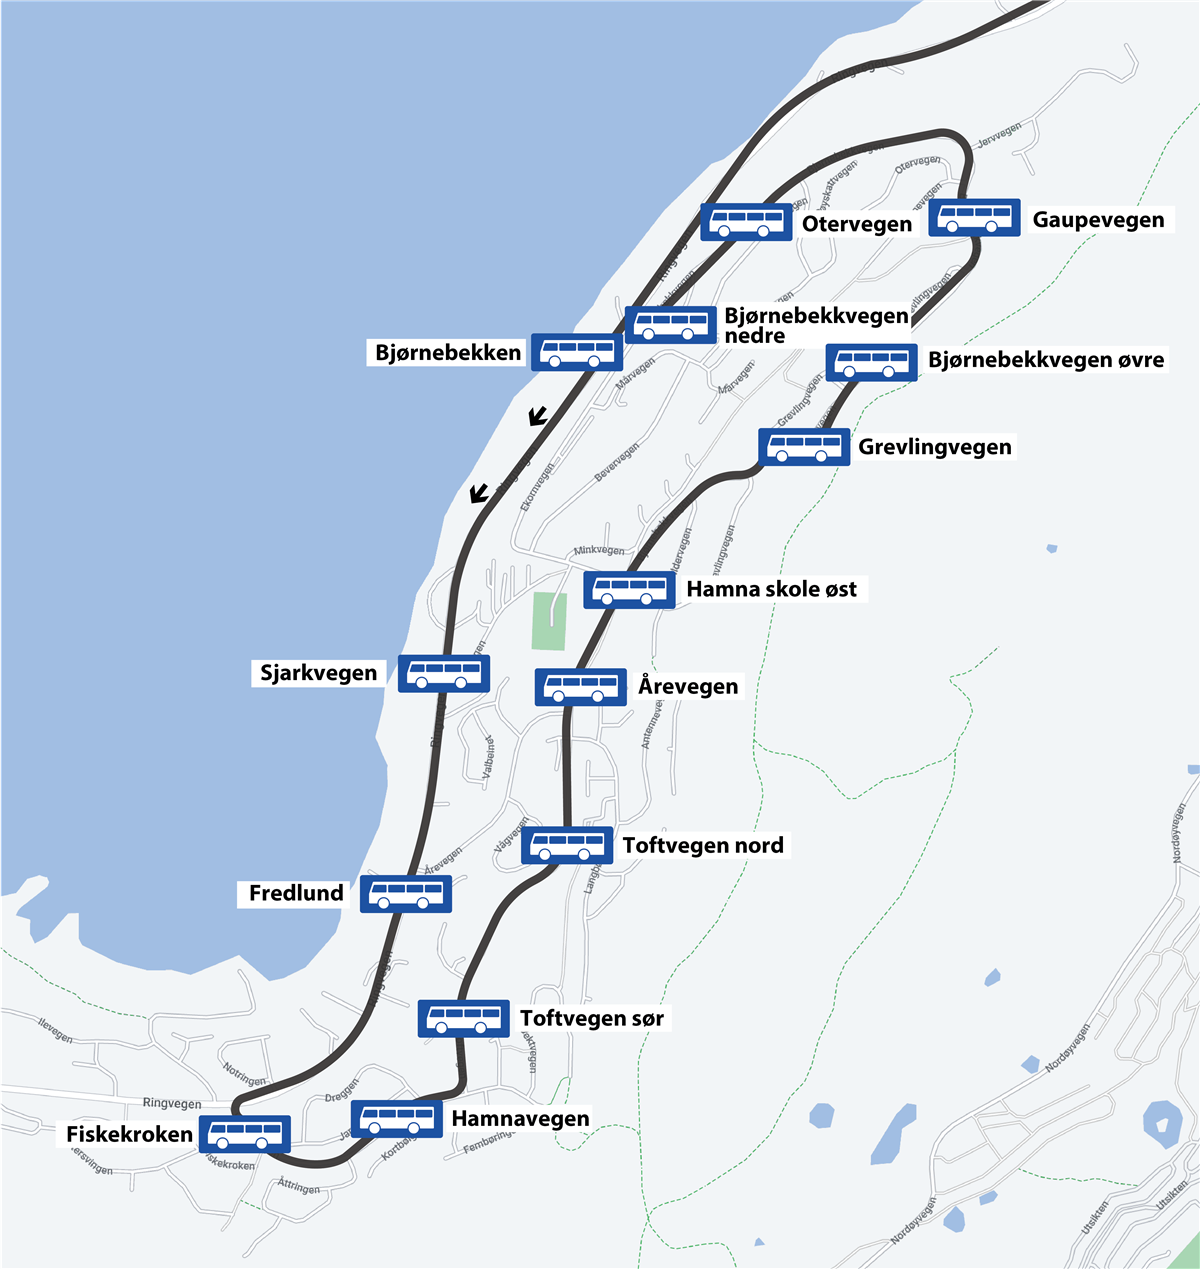 Kart over ny trasé linje X32. Illustrasjon. - Klikk for stort bilde